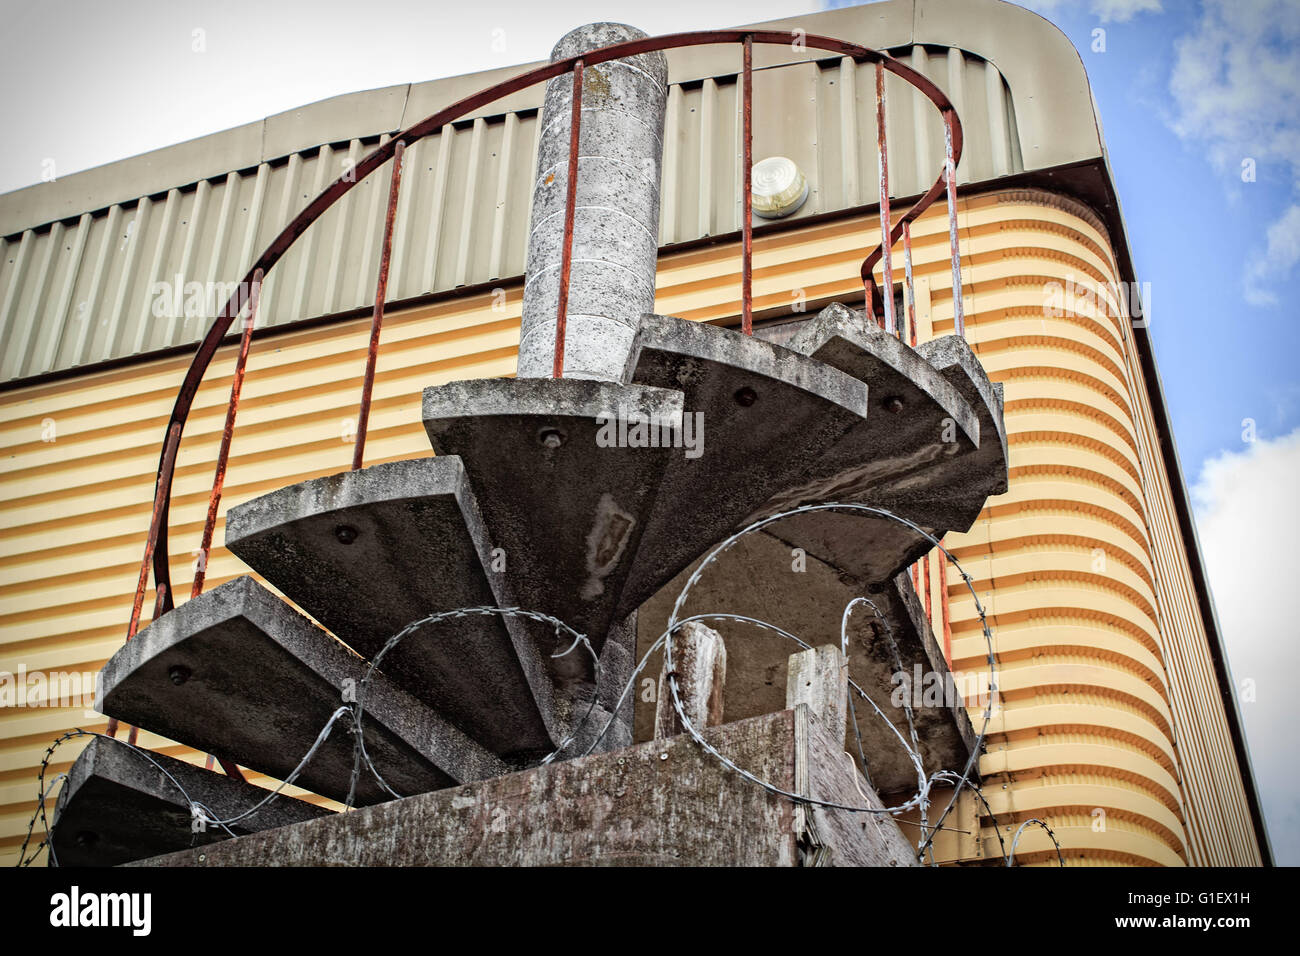 Escaliers en spirale avec fer forgé une fois utilisé comme une issue de secours sur un metal abadon warehouse Banque D'Images